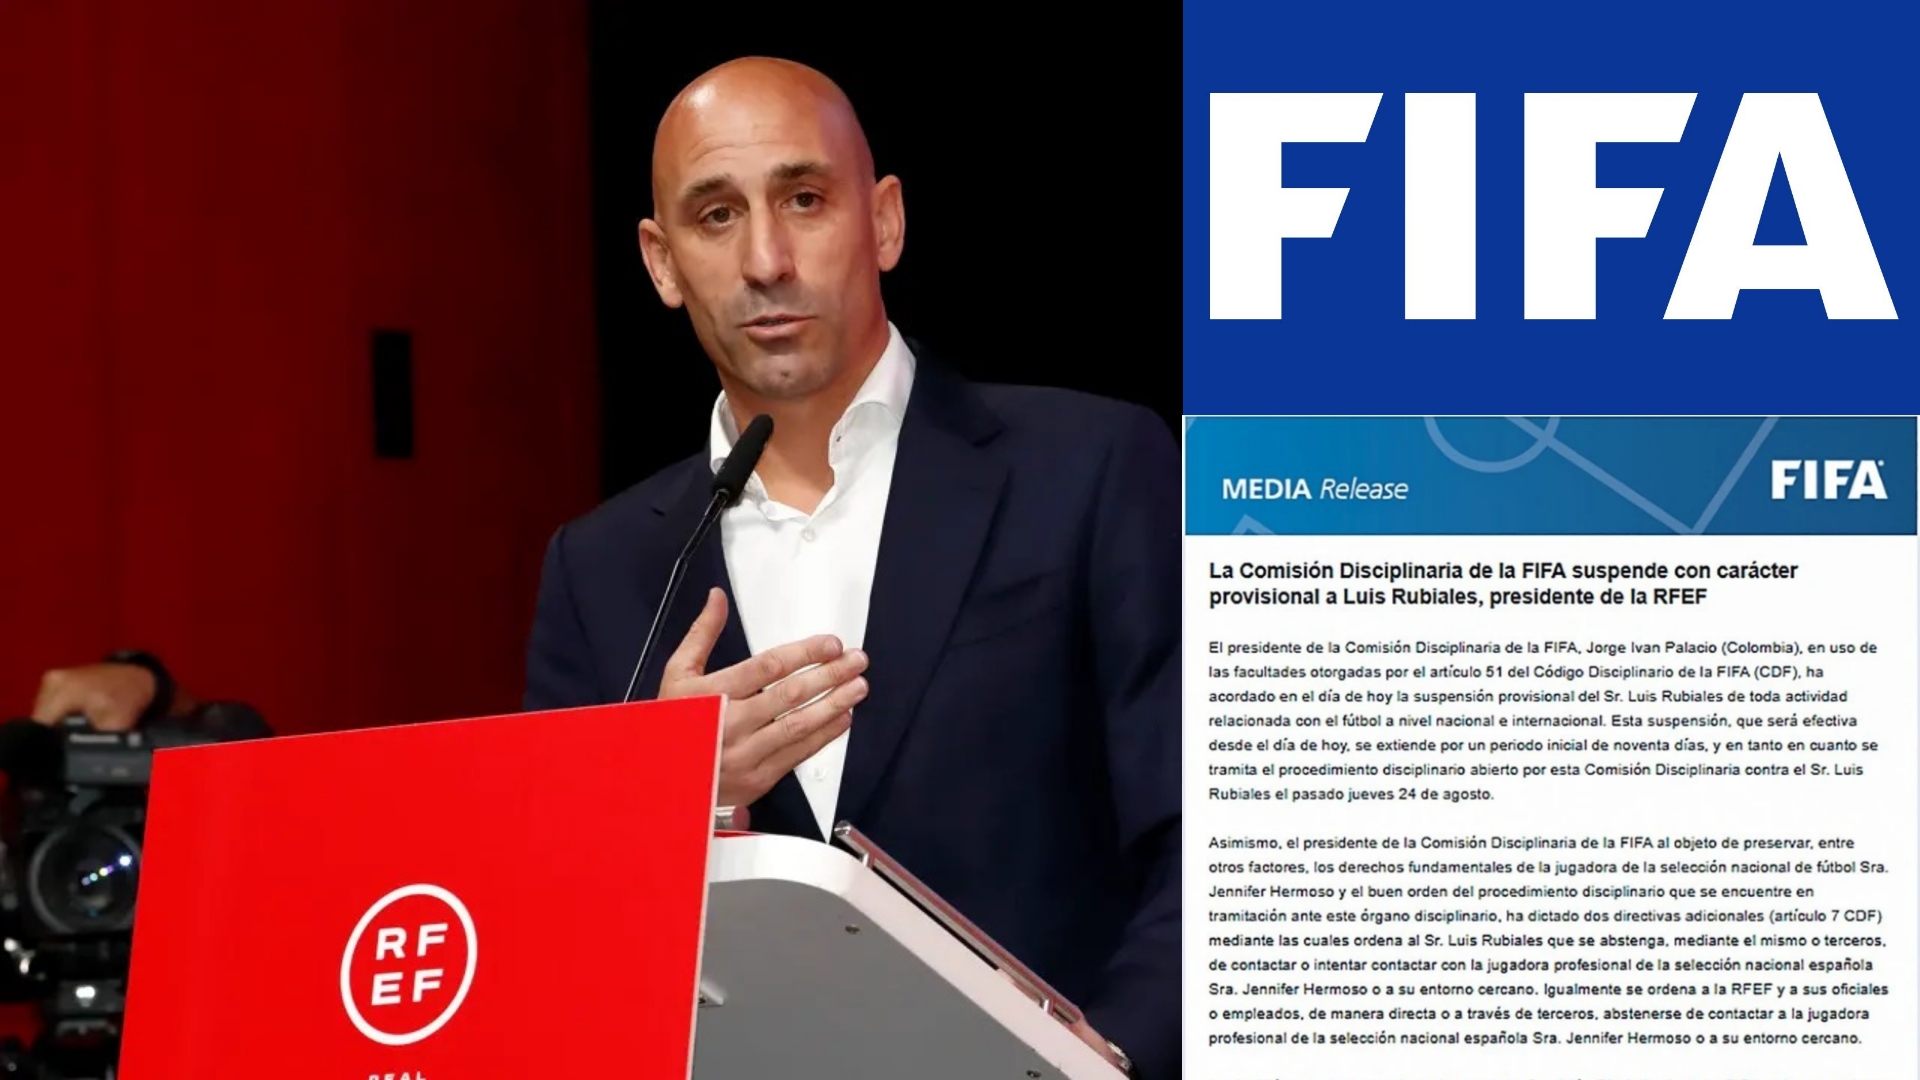 FIFA SUSPENDE A LUIS RUBIALES DE SU CARGO